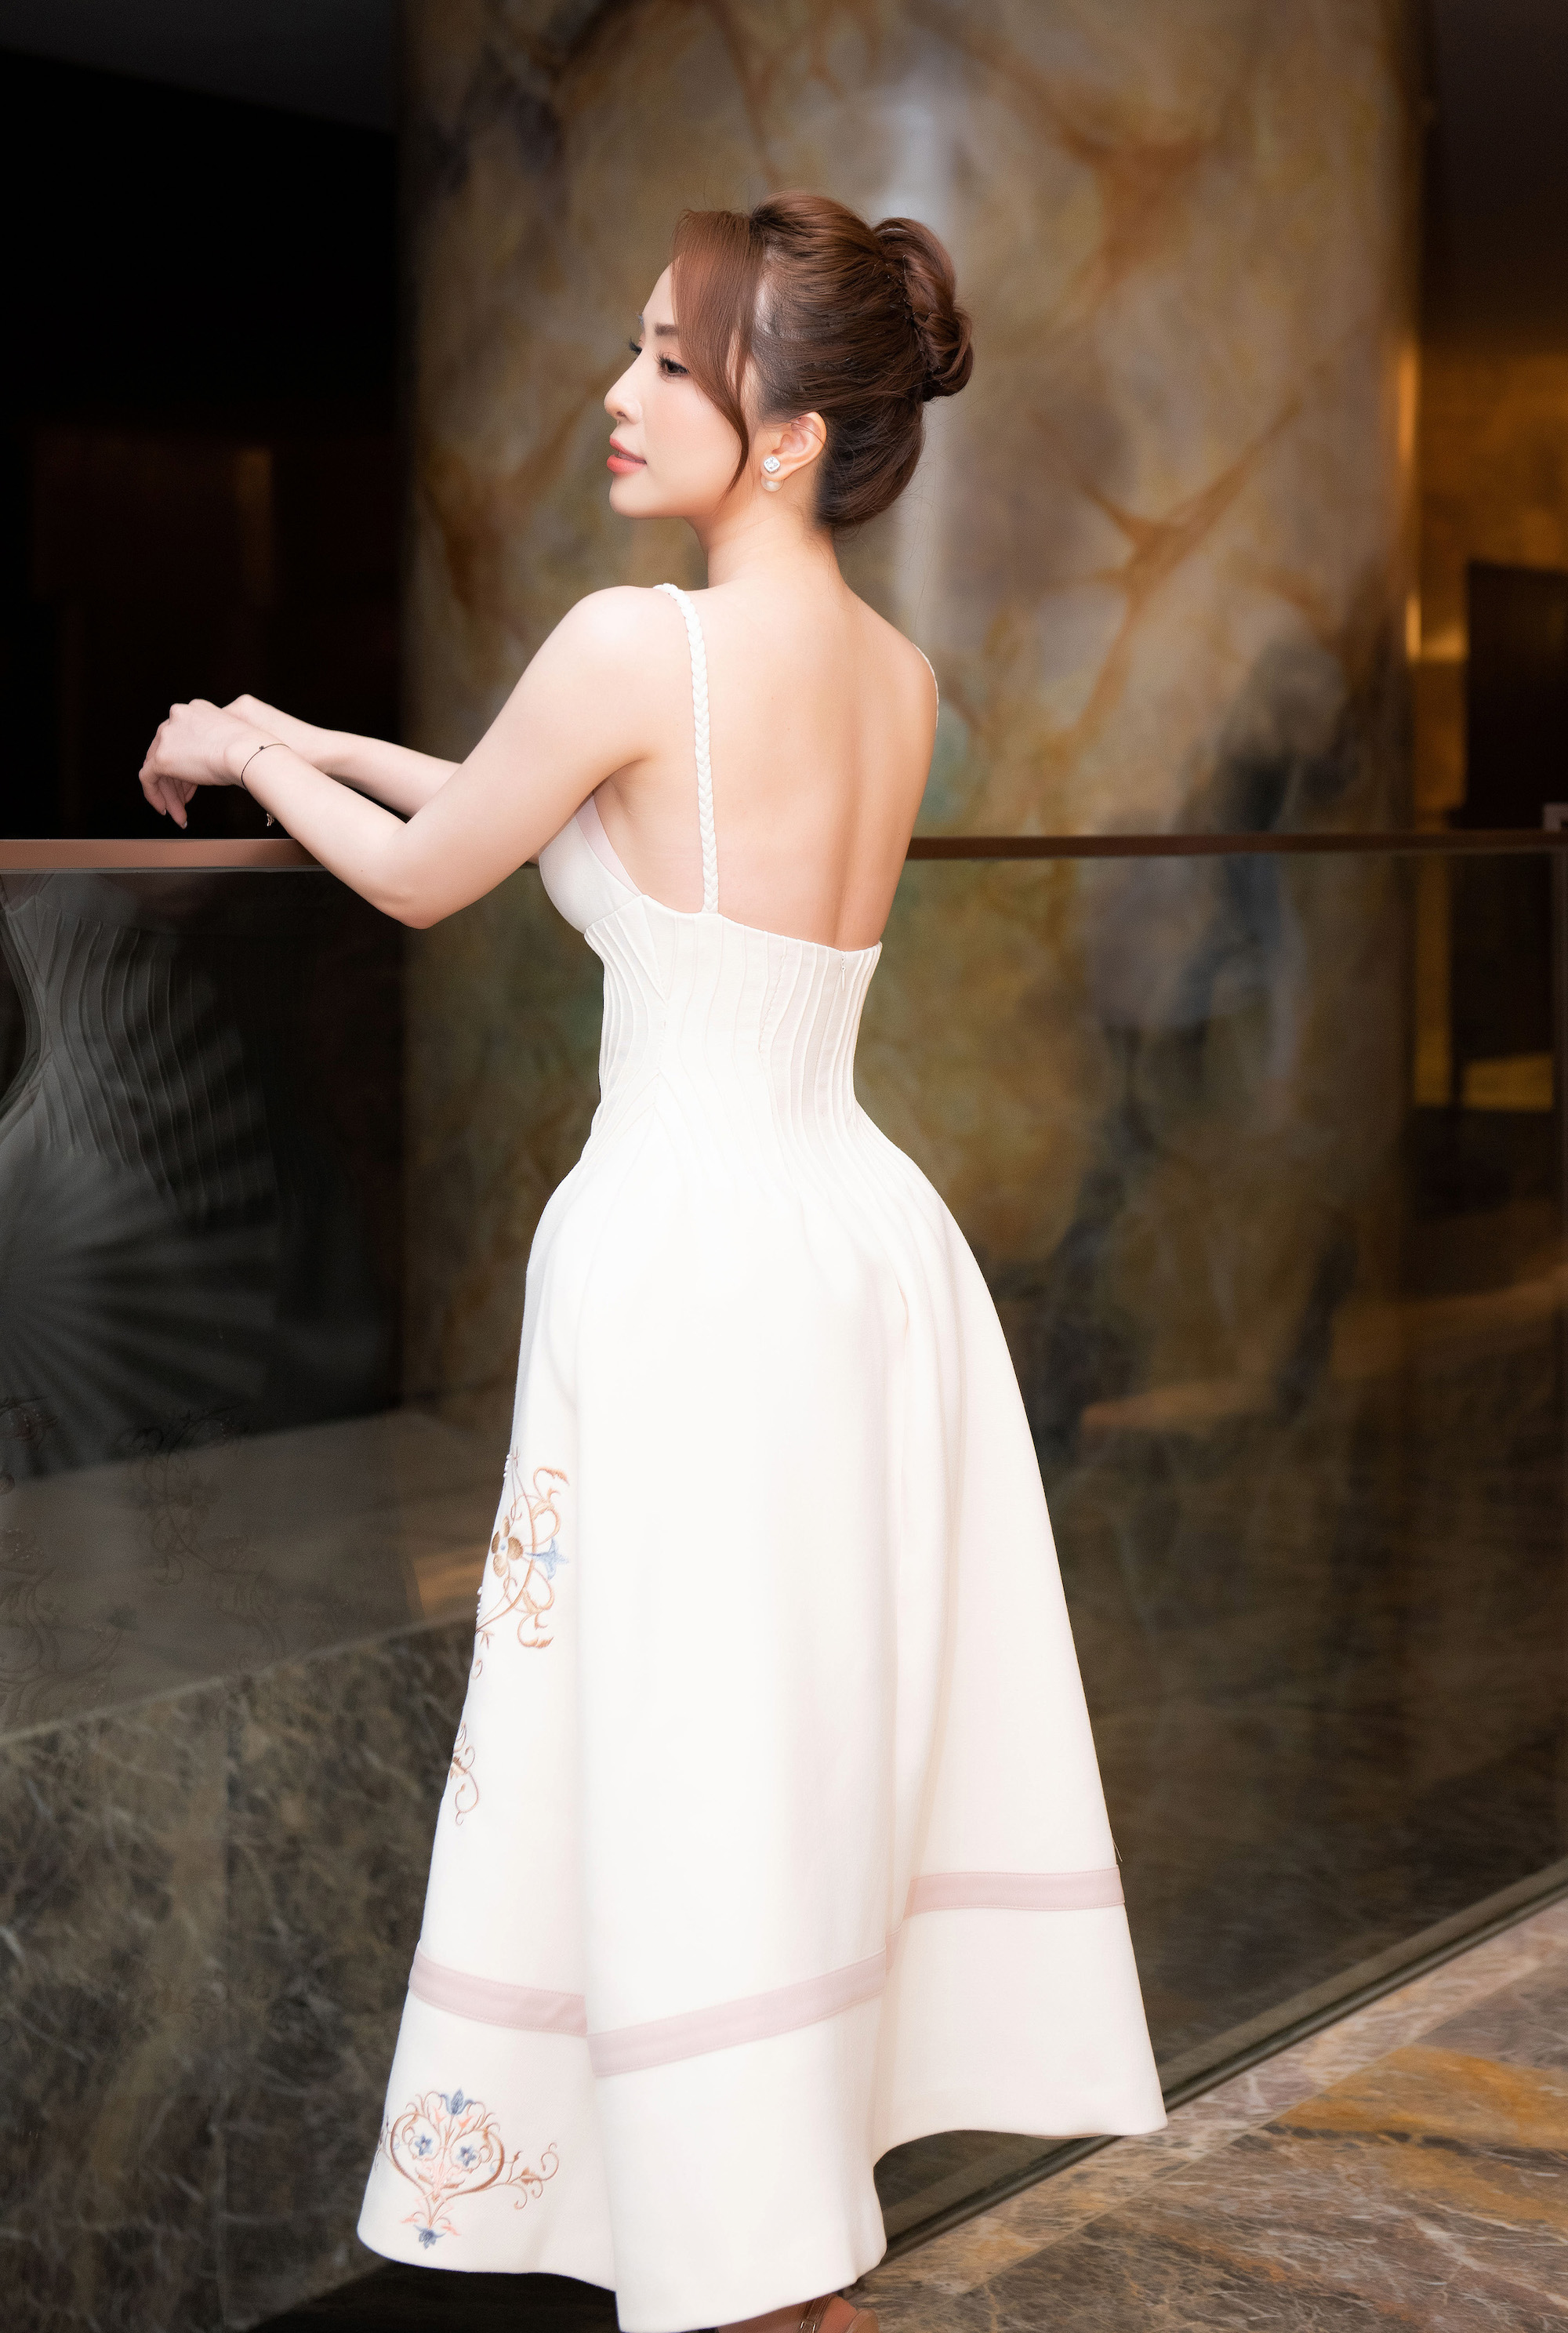 Tin tức giải trí - Quỳnh Nga nổi bật với váy áo khoe lưng trần, da trắng không tì vết trong họp báo phim mới (Hình 4).